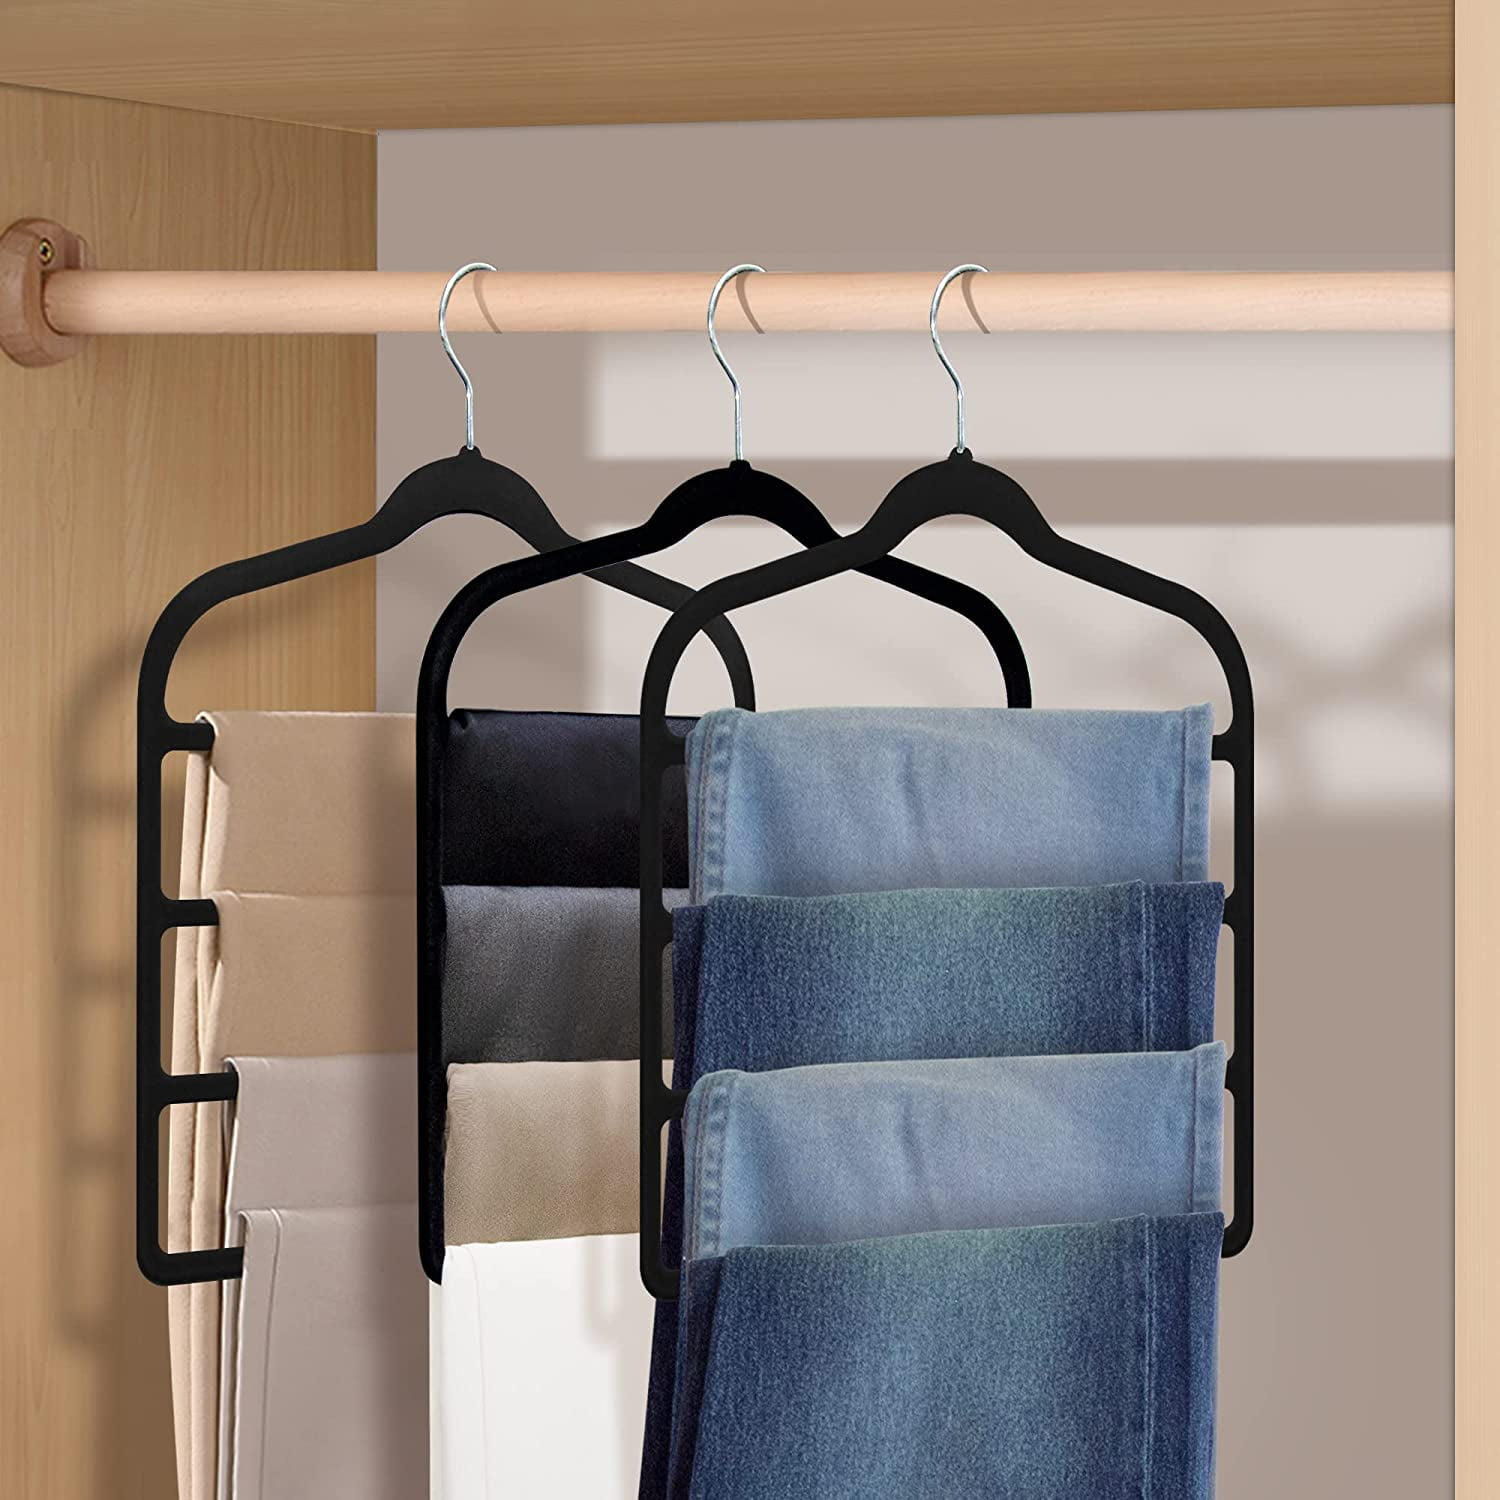 TRIANU 5 Pack Multi Layer Velvet Pants Hangers, 4 Tier Skirt Hangers Non  Slip Space Saving Closet Organizer for Slack, Trouser, Jeans, Leggings 